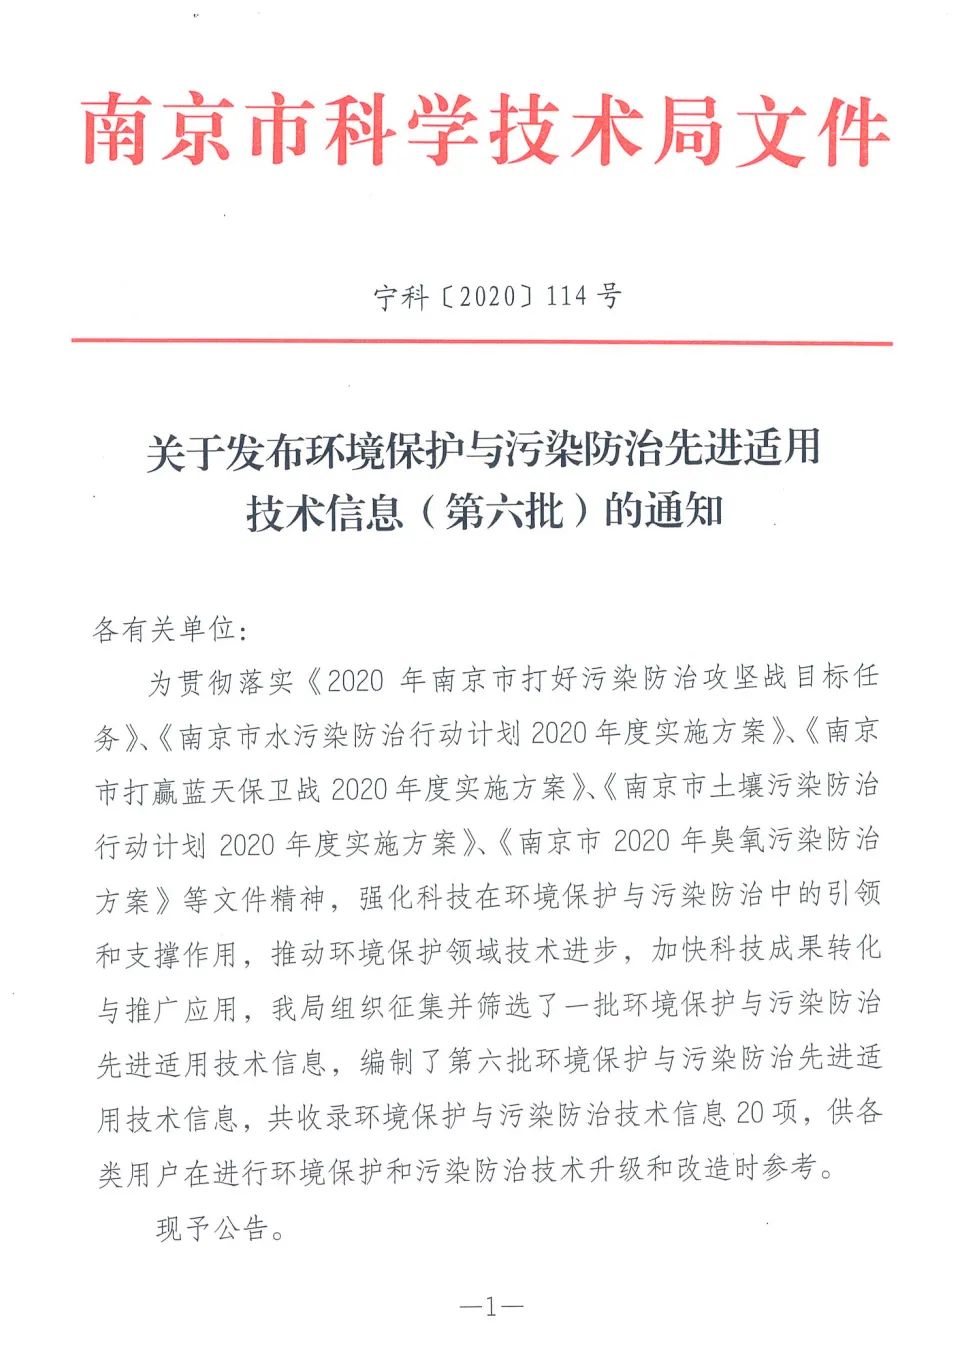 南京软件园 企业名录_南京梅山地区企业名录_南京瓷砖企业名录